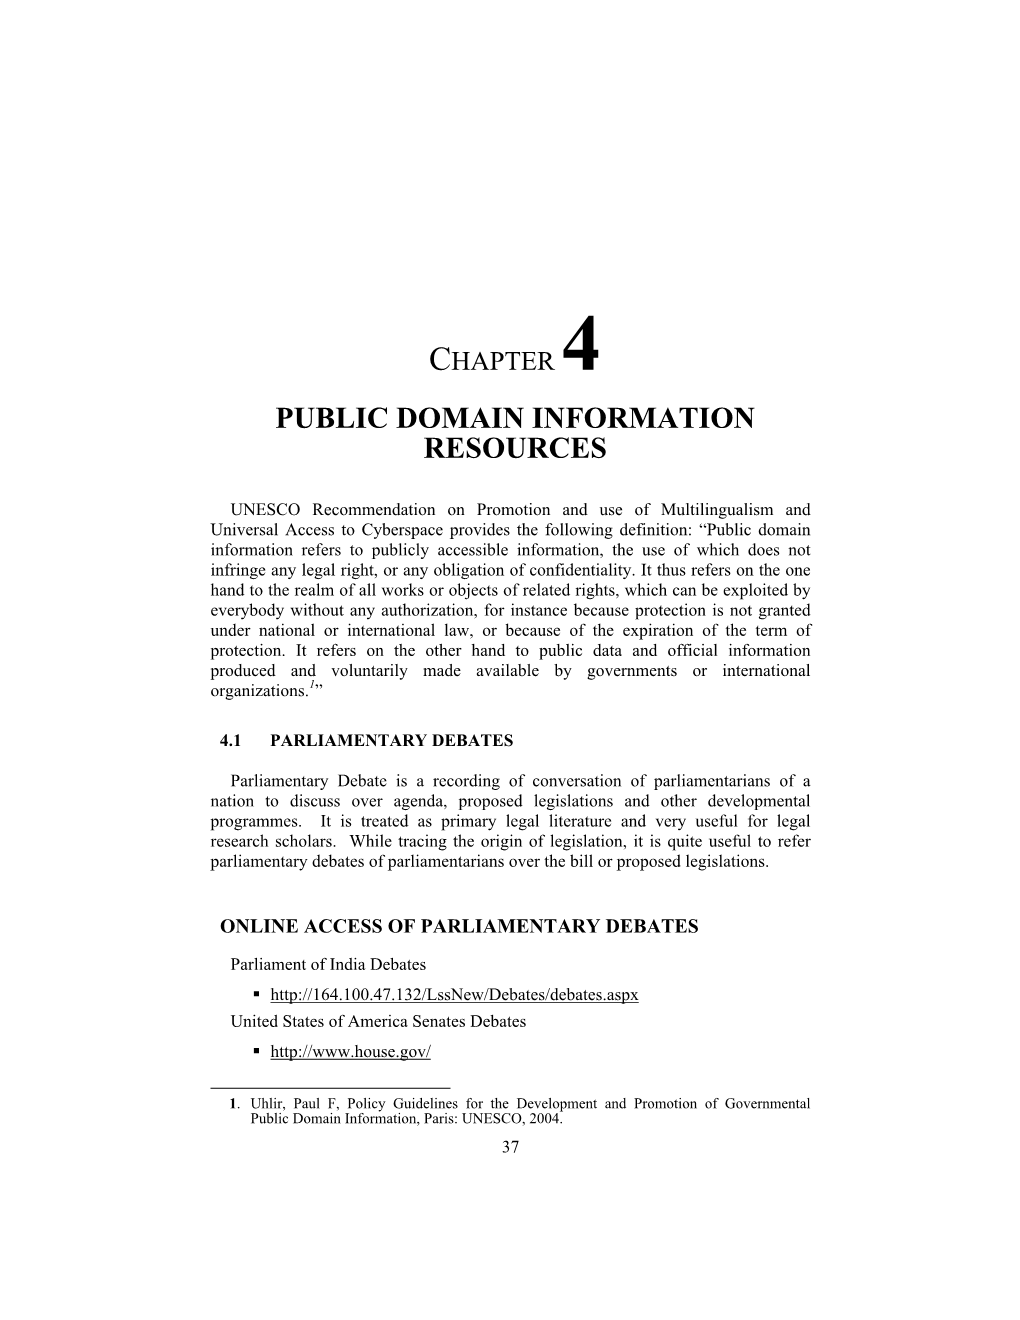 Public Domain Information Resources